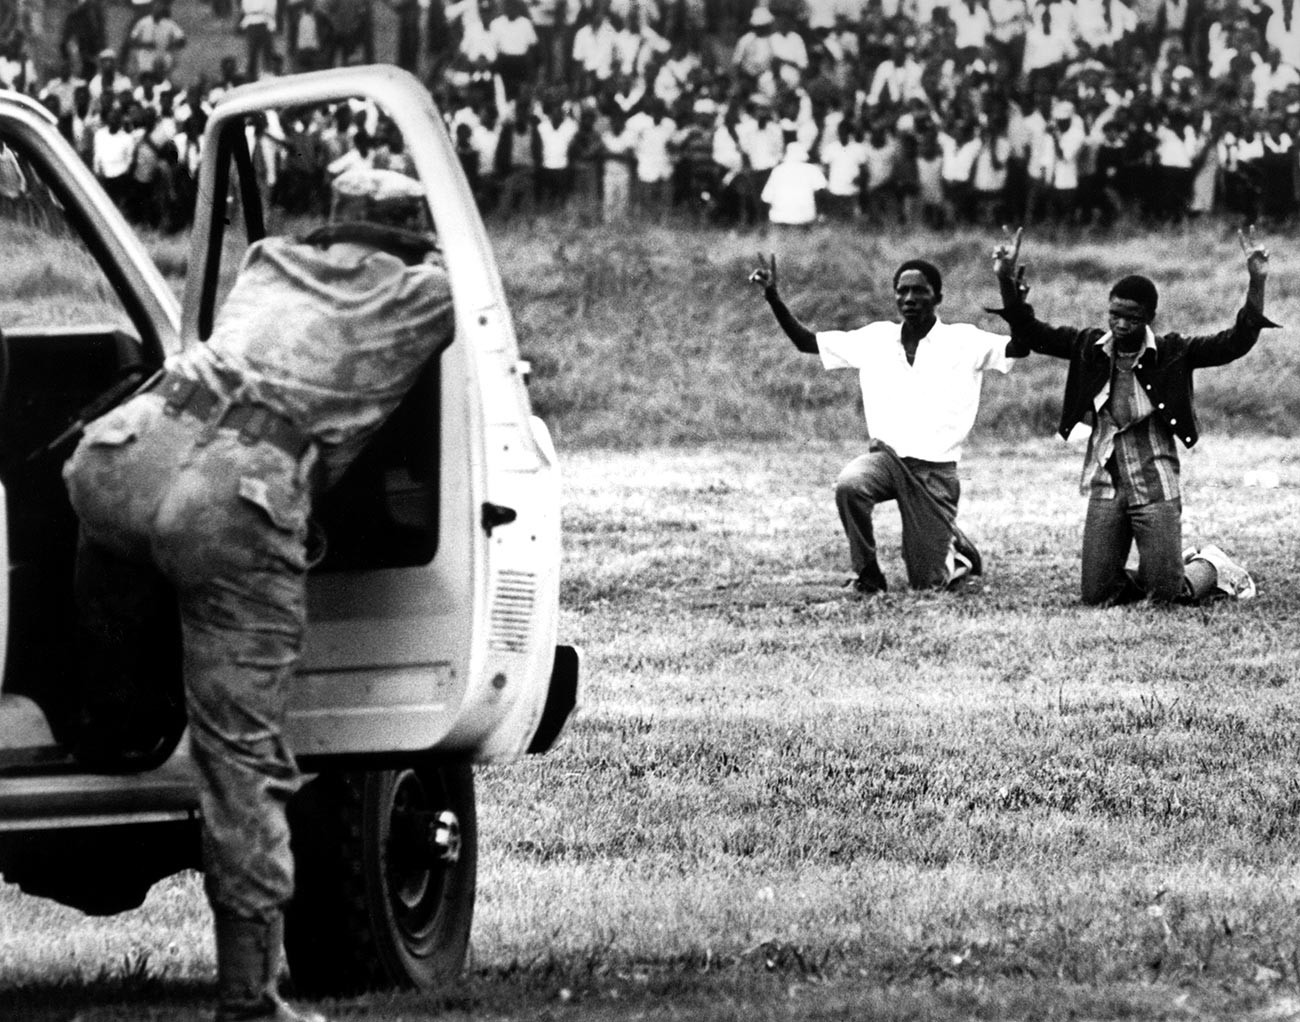 Mladi iz Soweta kleče ispred policije, držeći ruke u zraku pokazujući znak mira, 16. lipnja 1976., Soweto, Južna Afrika